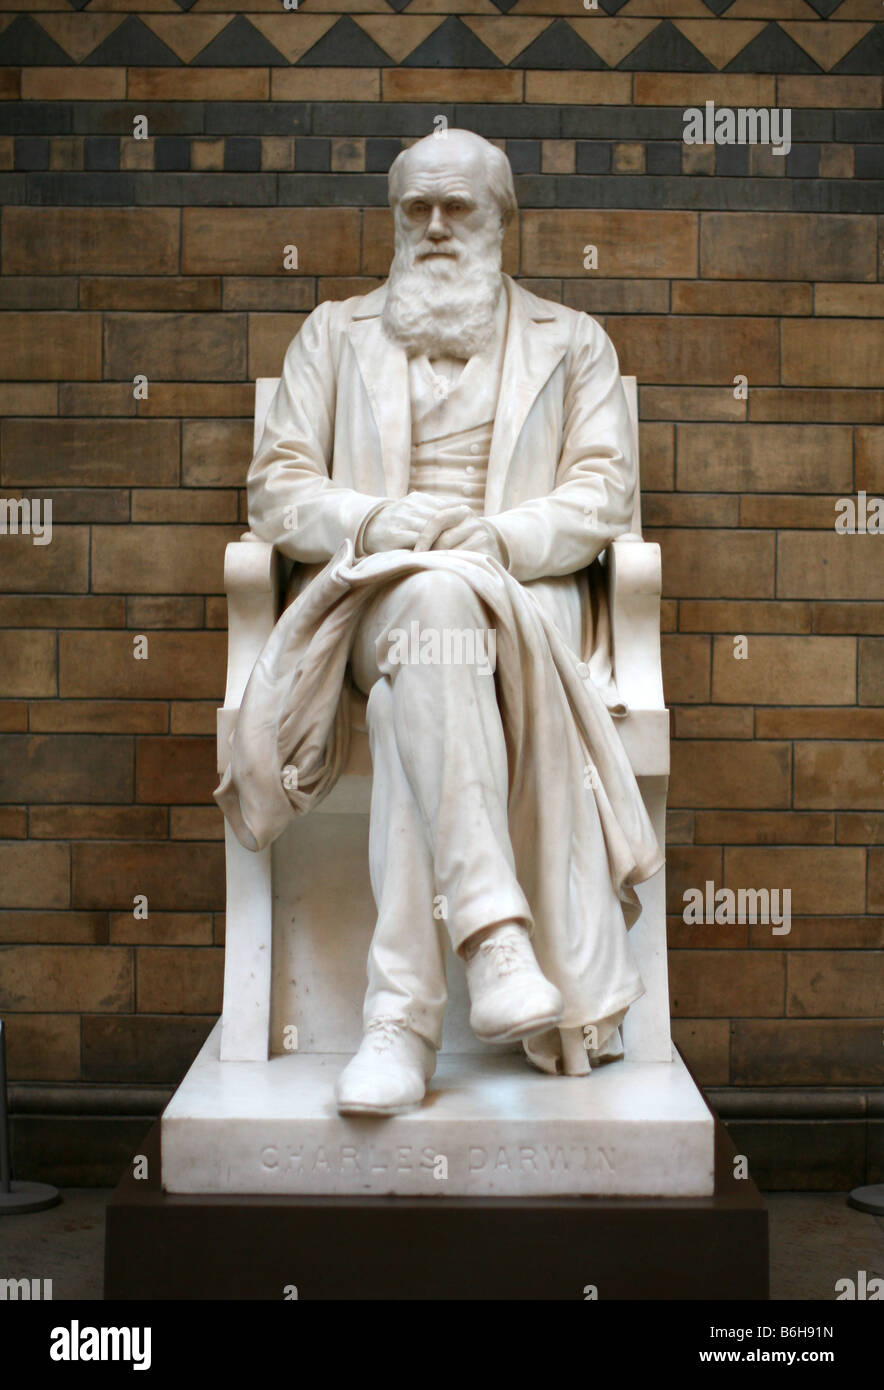 Escultura de Charles Darwin en el Museo de Historia Natural, Londres Foto de stock